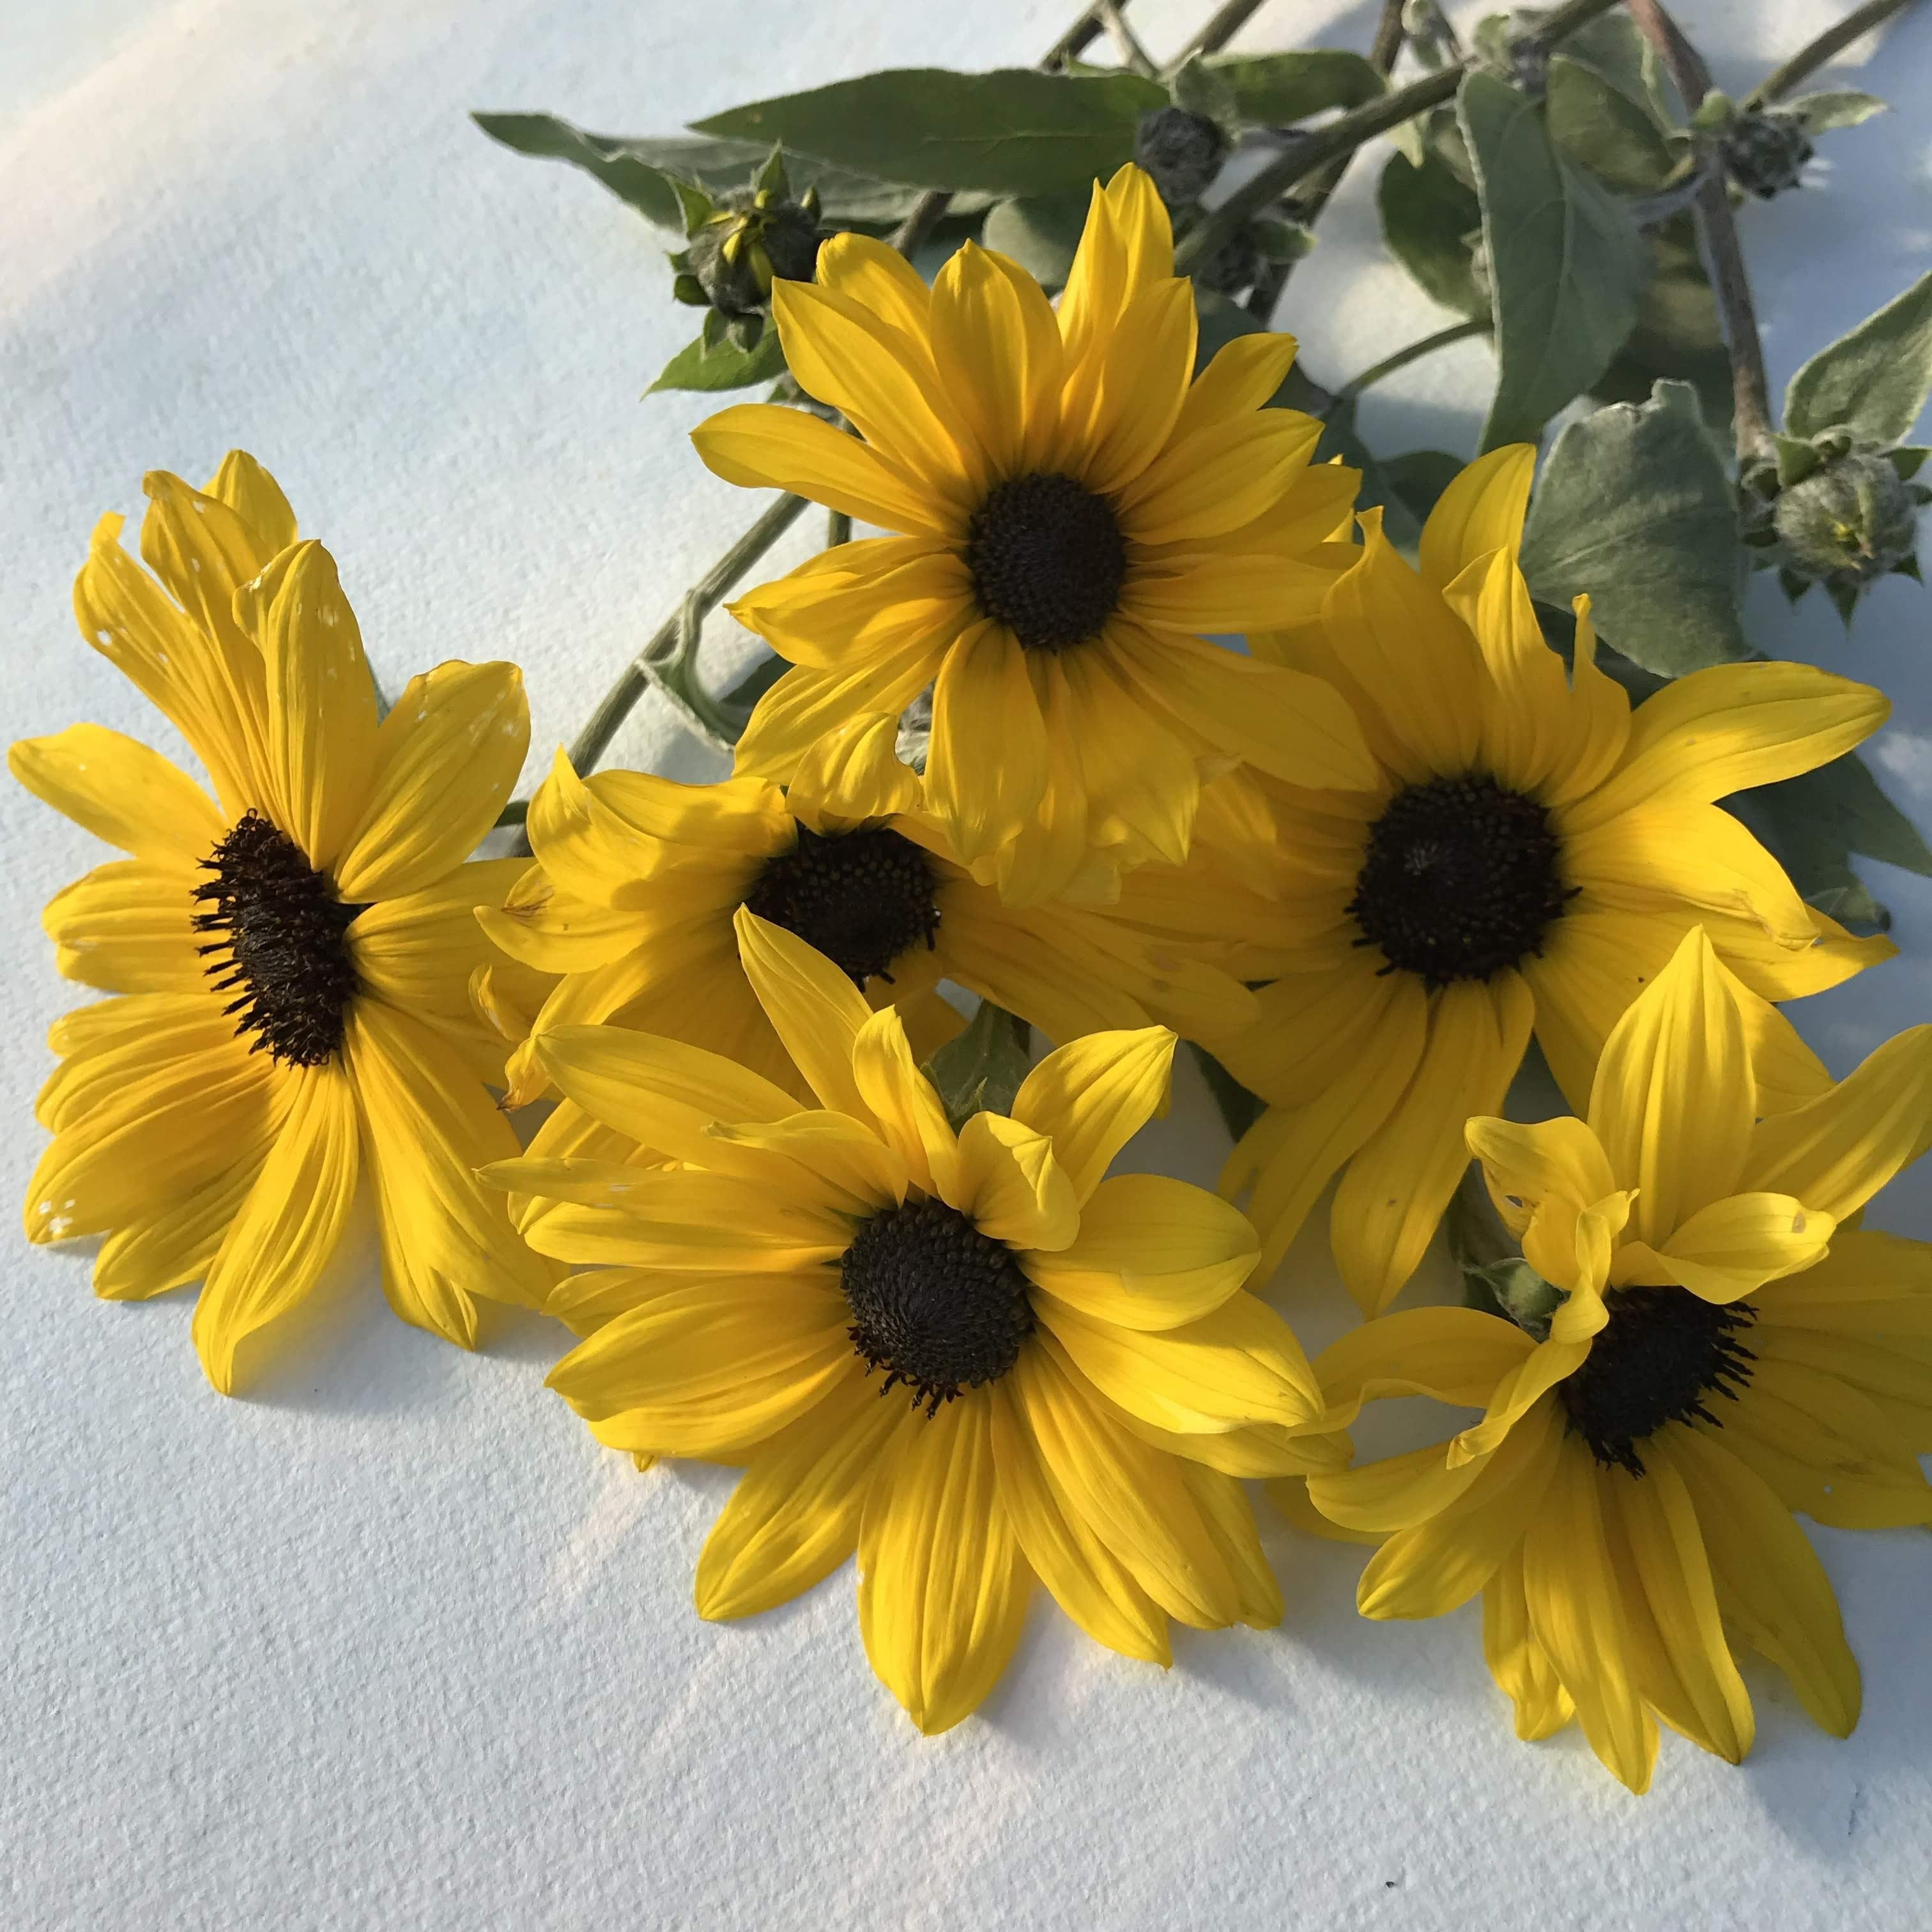 Silverleaf Sunflower vendor-unknown